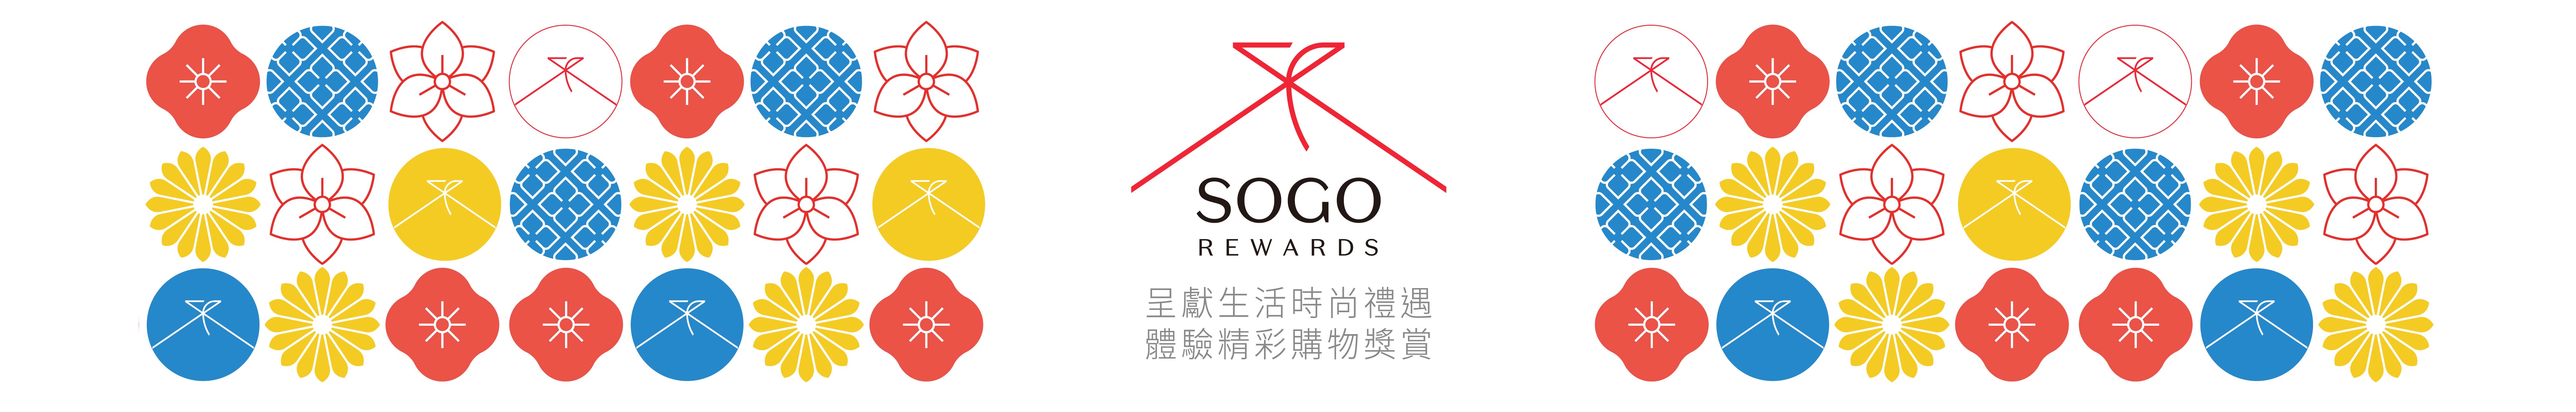 Sogo Rewards